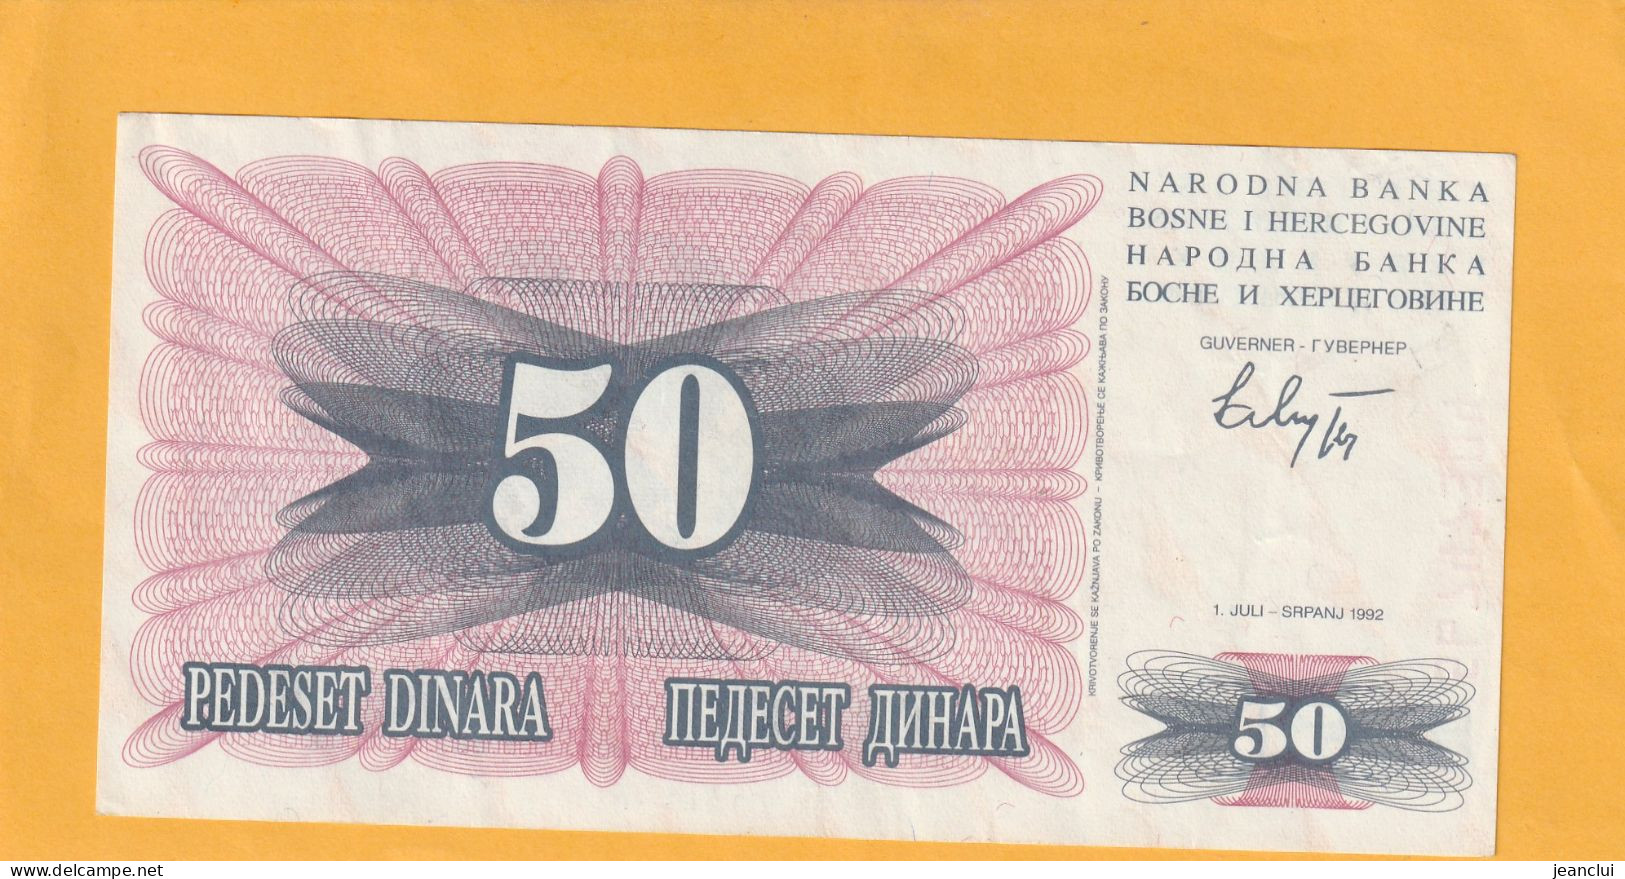 NARODNA BANKA BOSNE I HERCEGOVINE  .  50 DINARA  . 1-7-1992  .  N°  56 74 7304  .  2 SCANNES  .  BILLET EN TRES BEL ETAT - Bosnien-Herzegowina